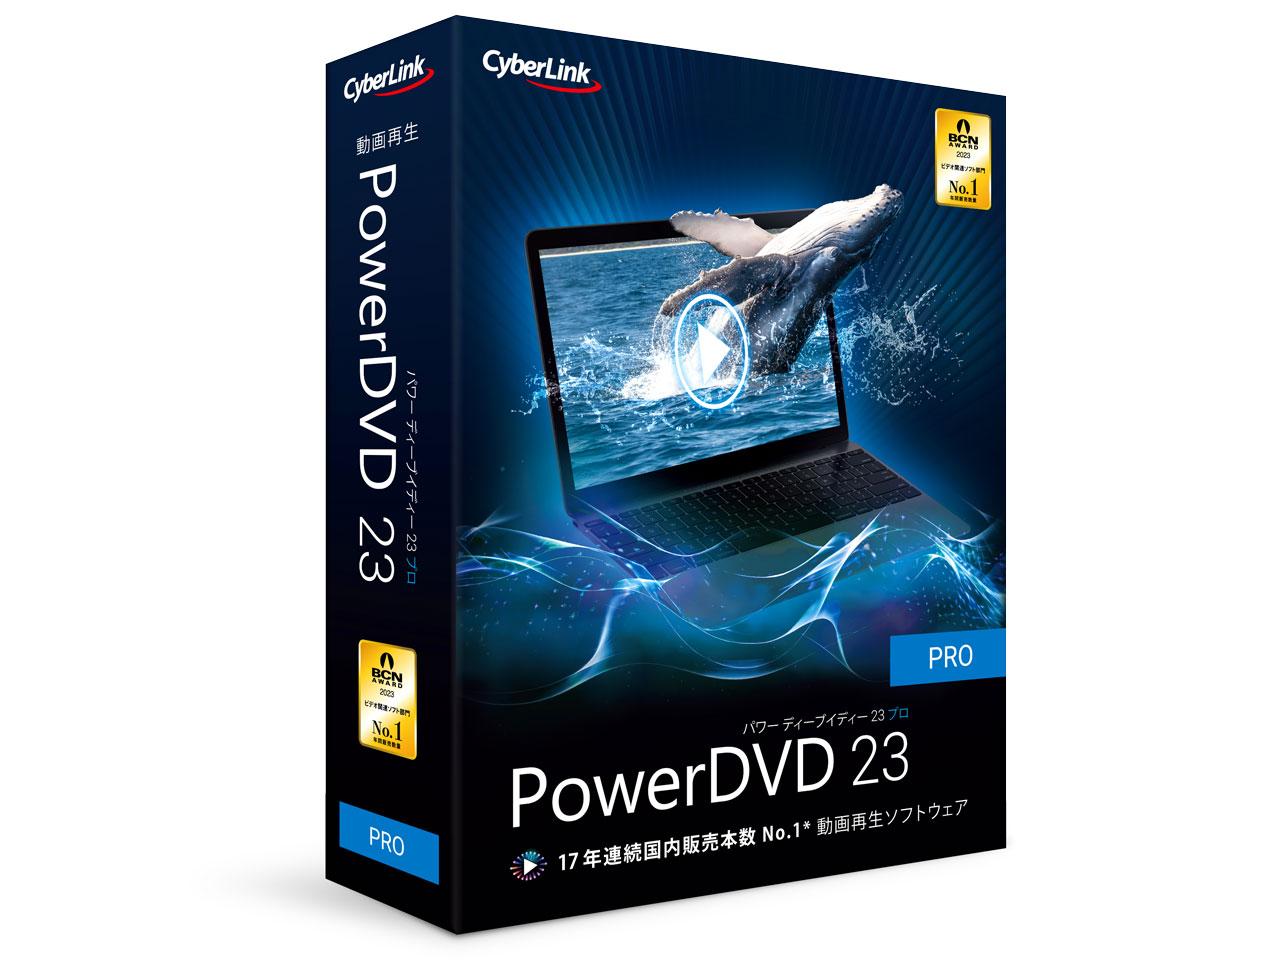 PowerDVD 23 Pro ʏ(DVD23PRONM-001)